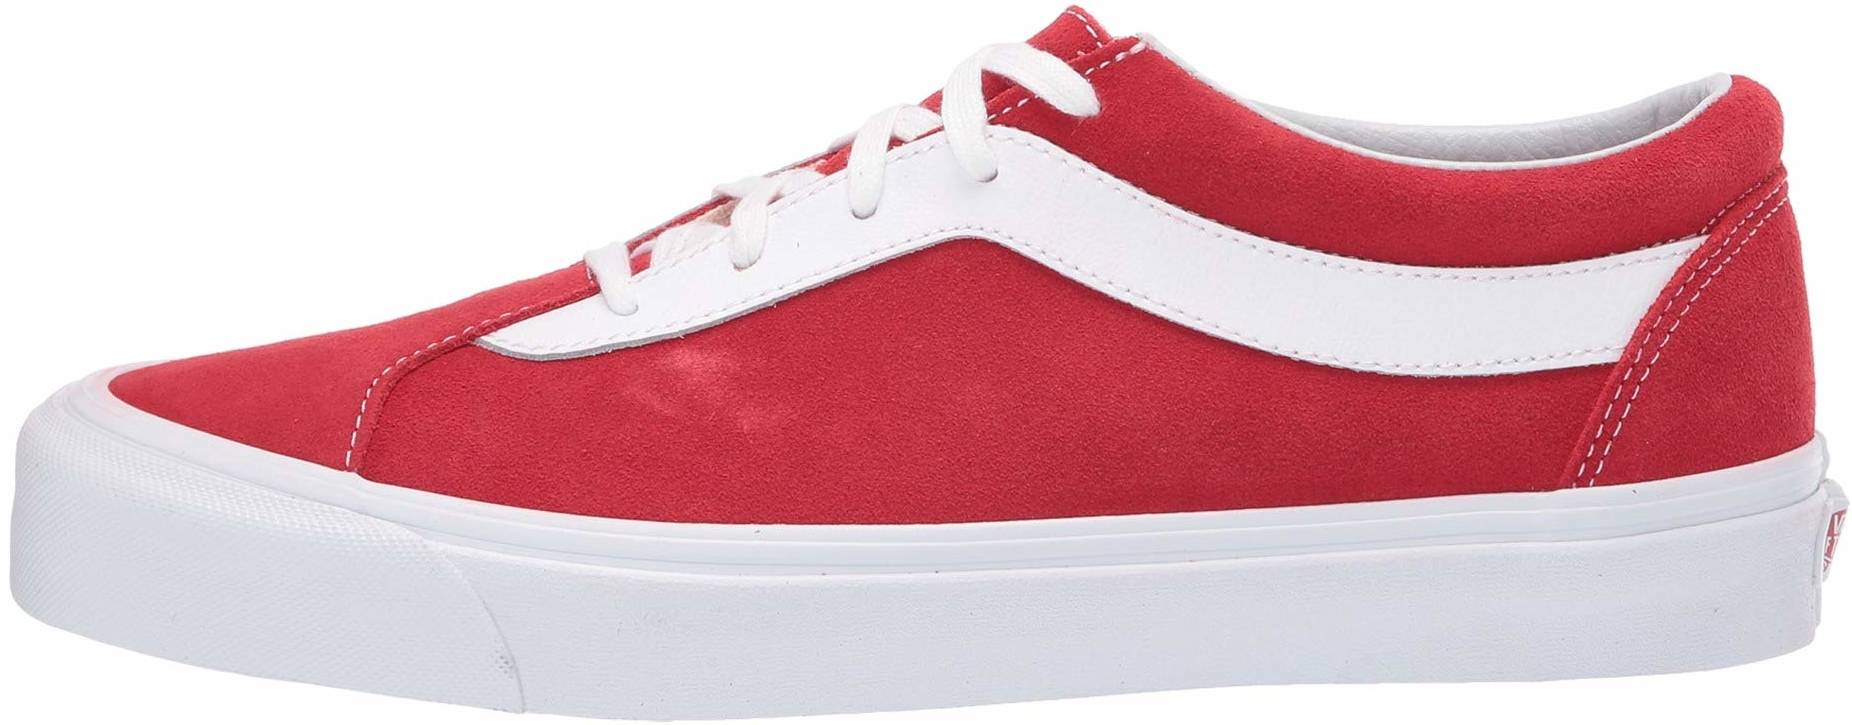 20+ Red Vans sneakers | RunRepeat